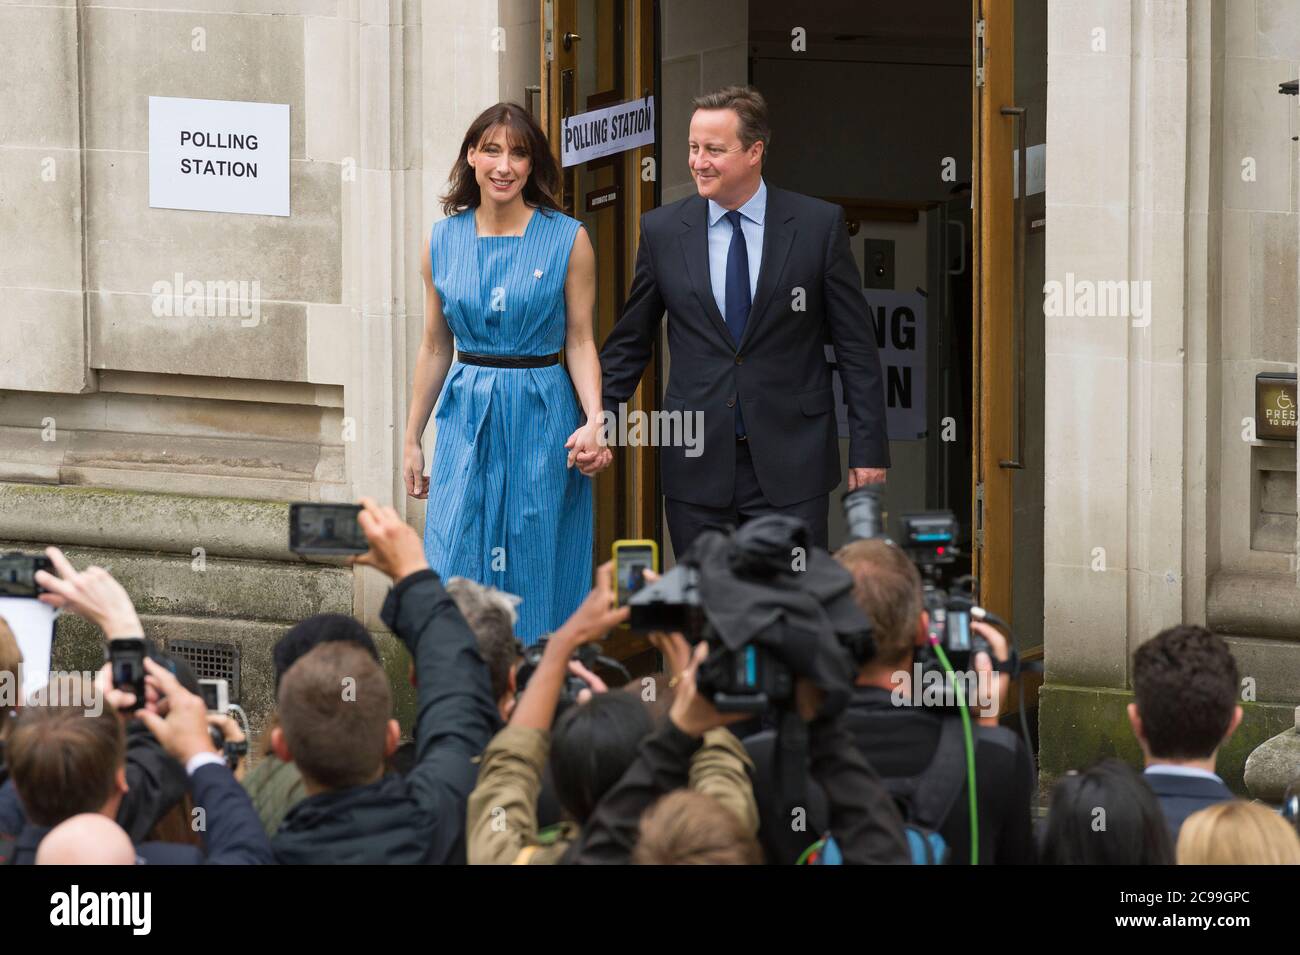 Le Premier ministre britannique David Cameron part avec sa femme Samantha après avoir voté lors du référendum britannique sur le maintien ou non d'une partie de l'Union européenne, Methodist Central Hall Westminster, Londres, Royaume-Uni. 23 juin 2016 Banque D'Images